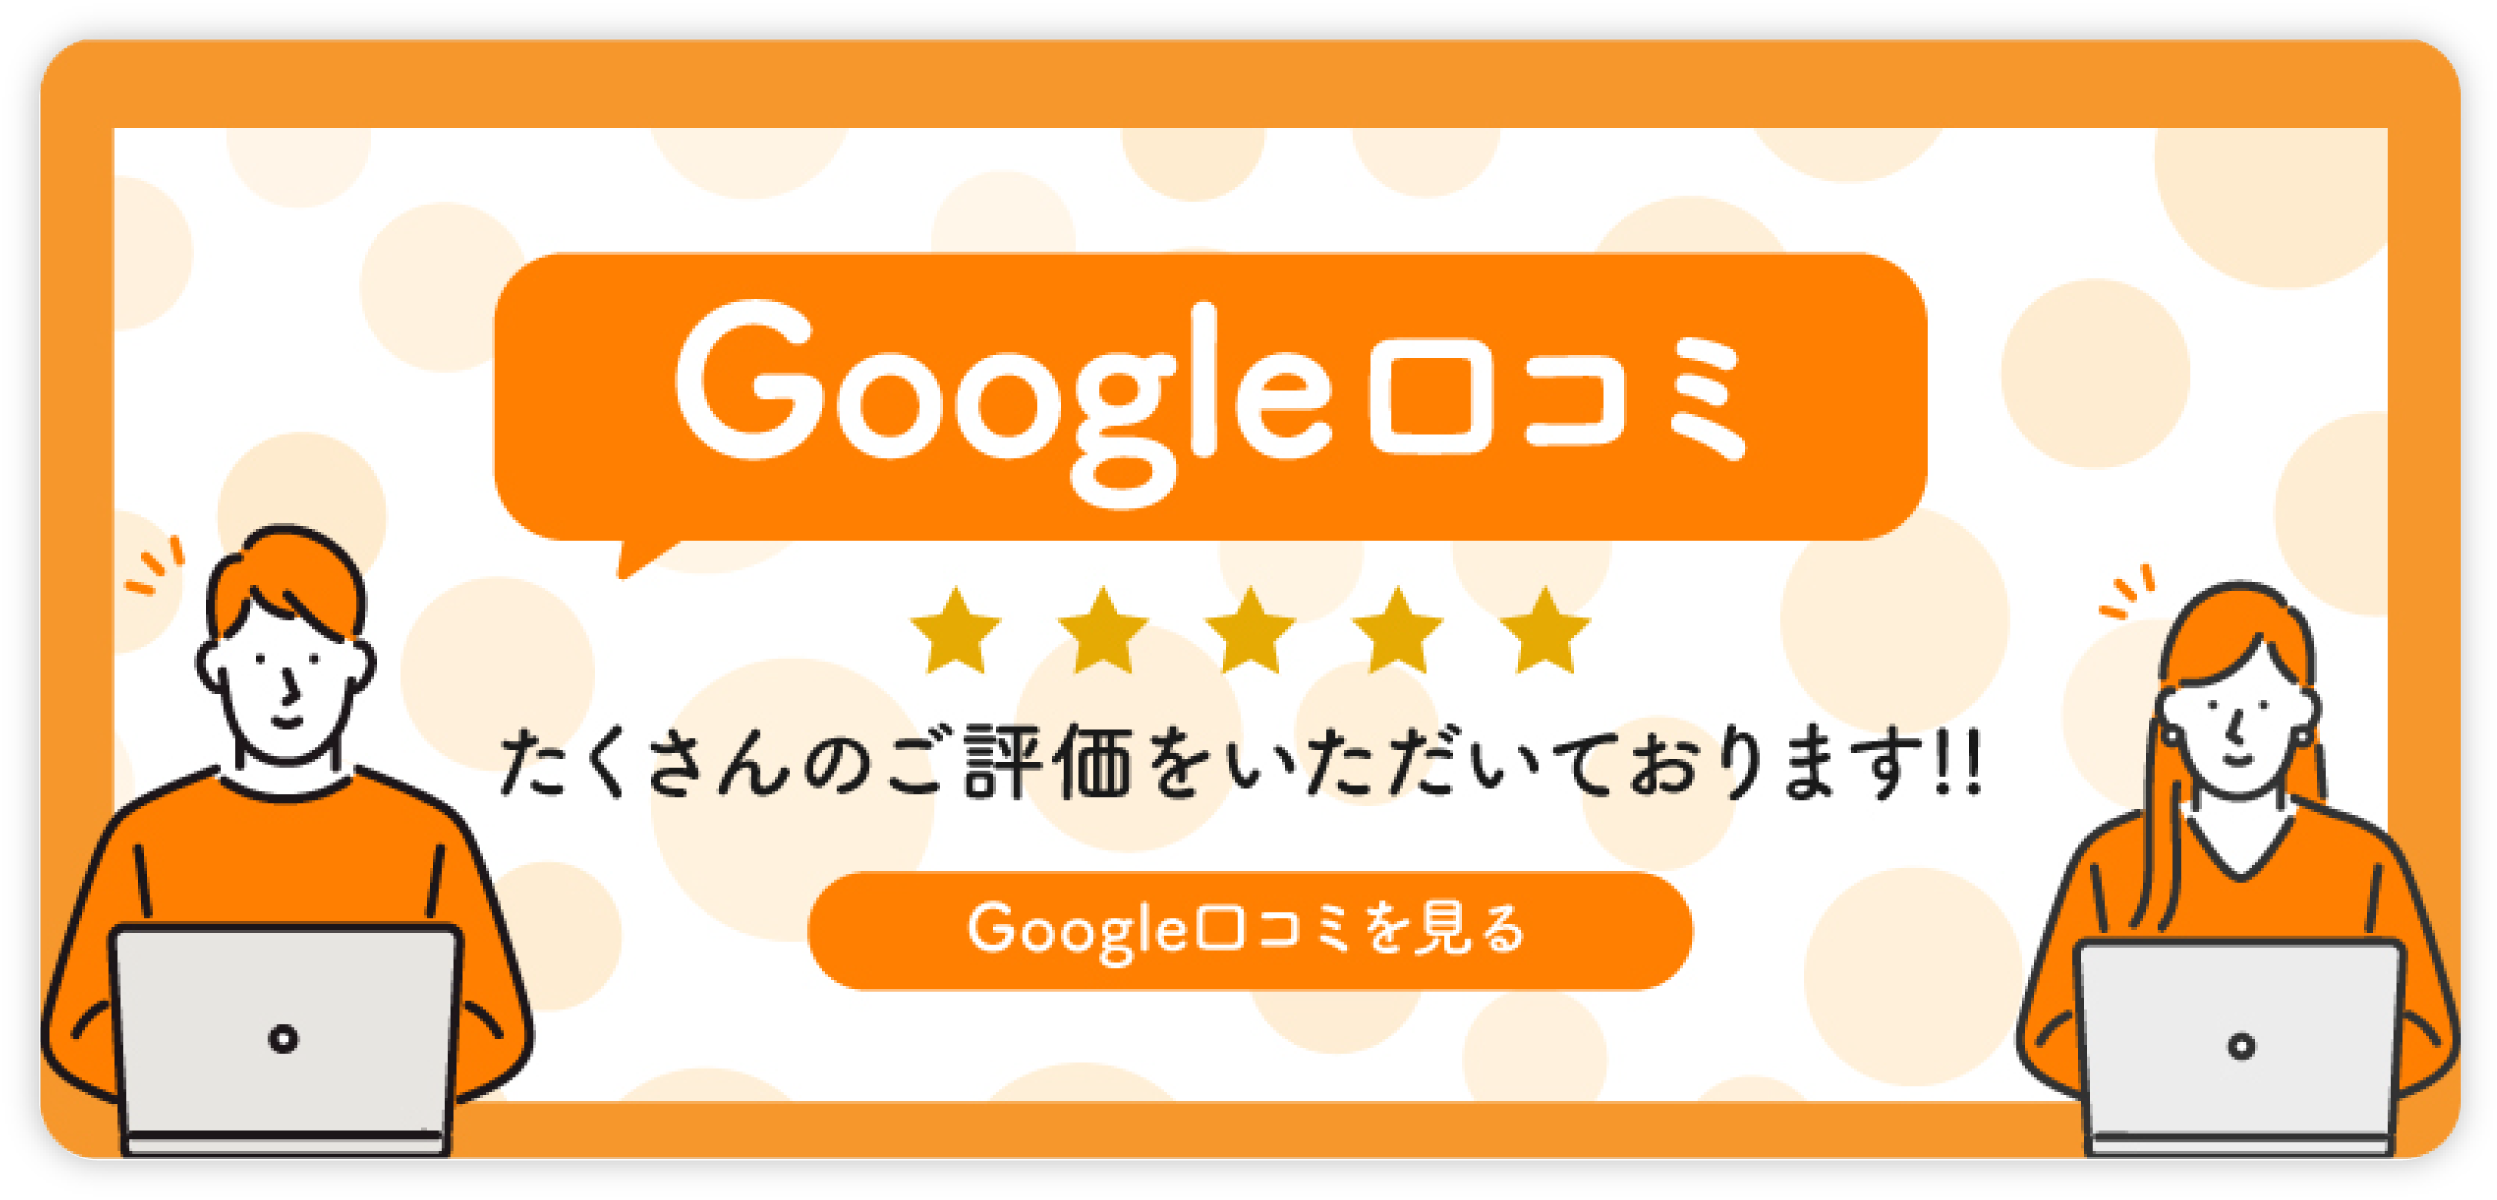 エーポジション福島店は、Googleの口コミで高評価をいただいております